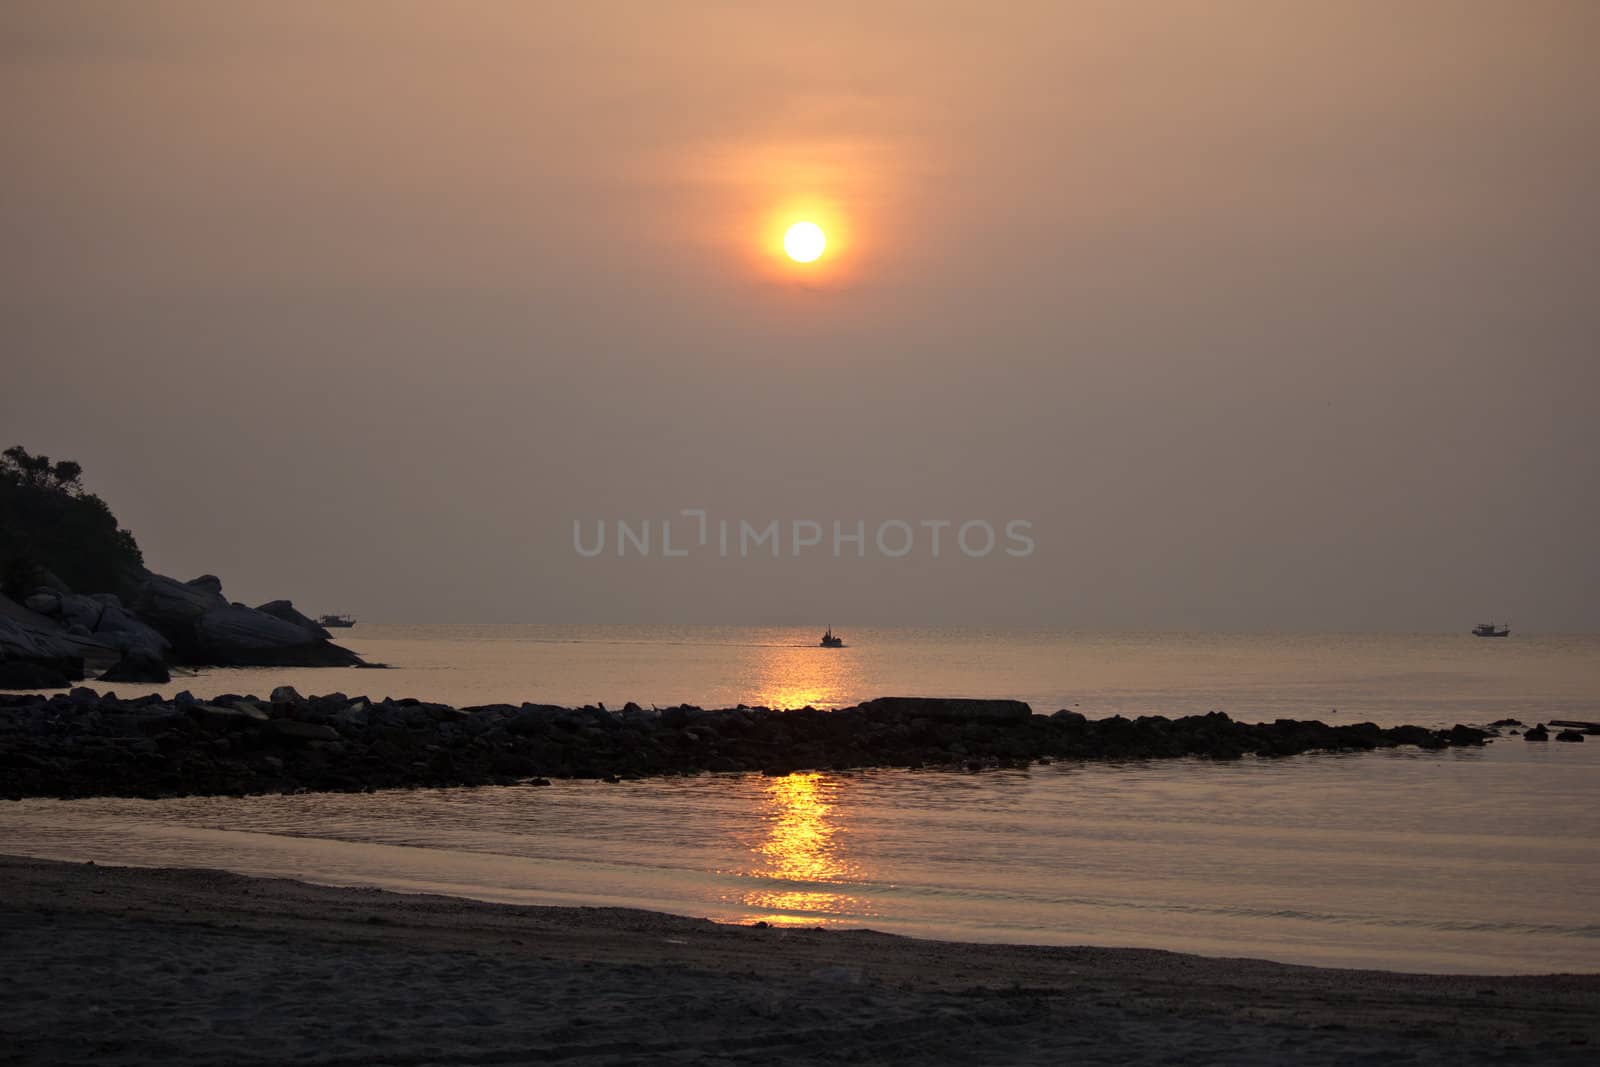 Hua Hin sun rise with reflection